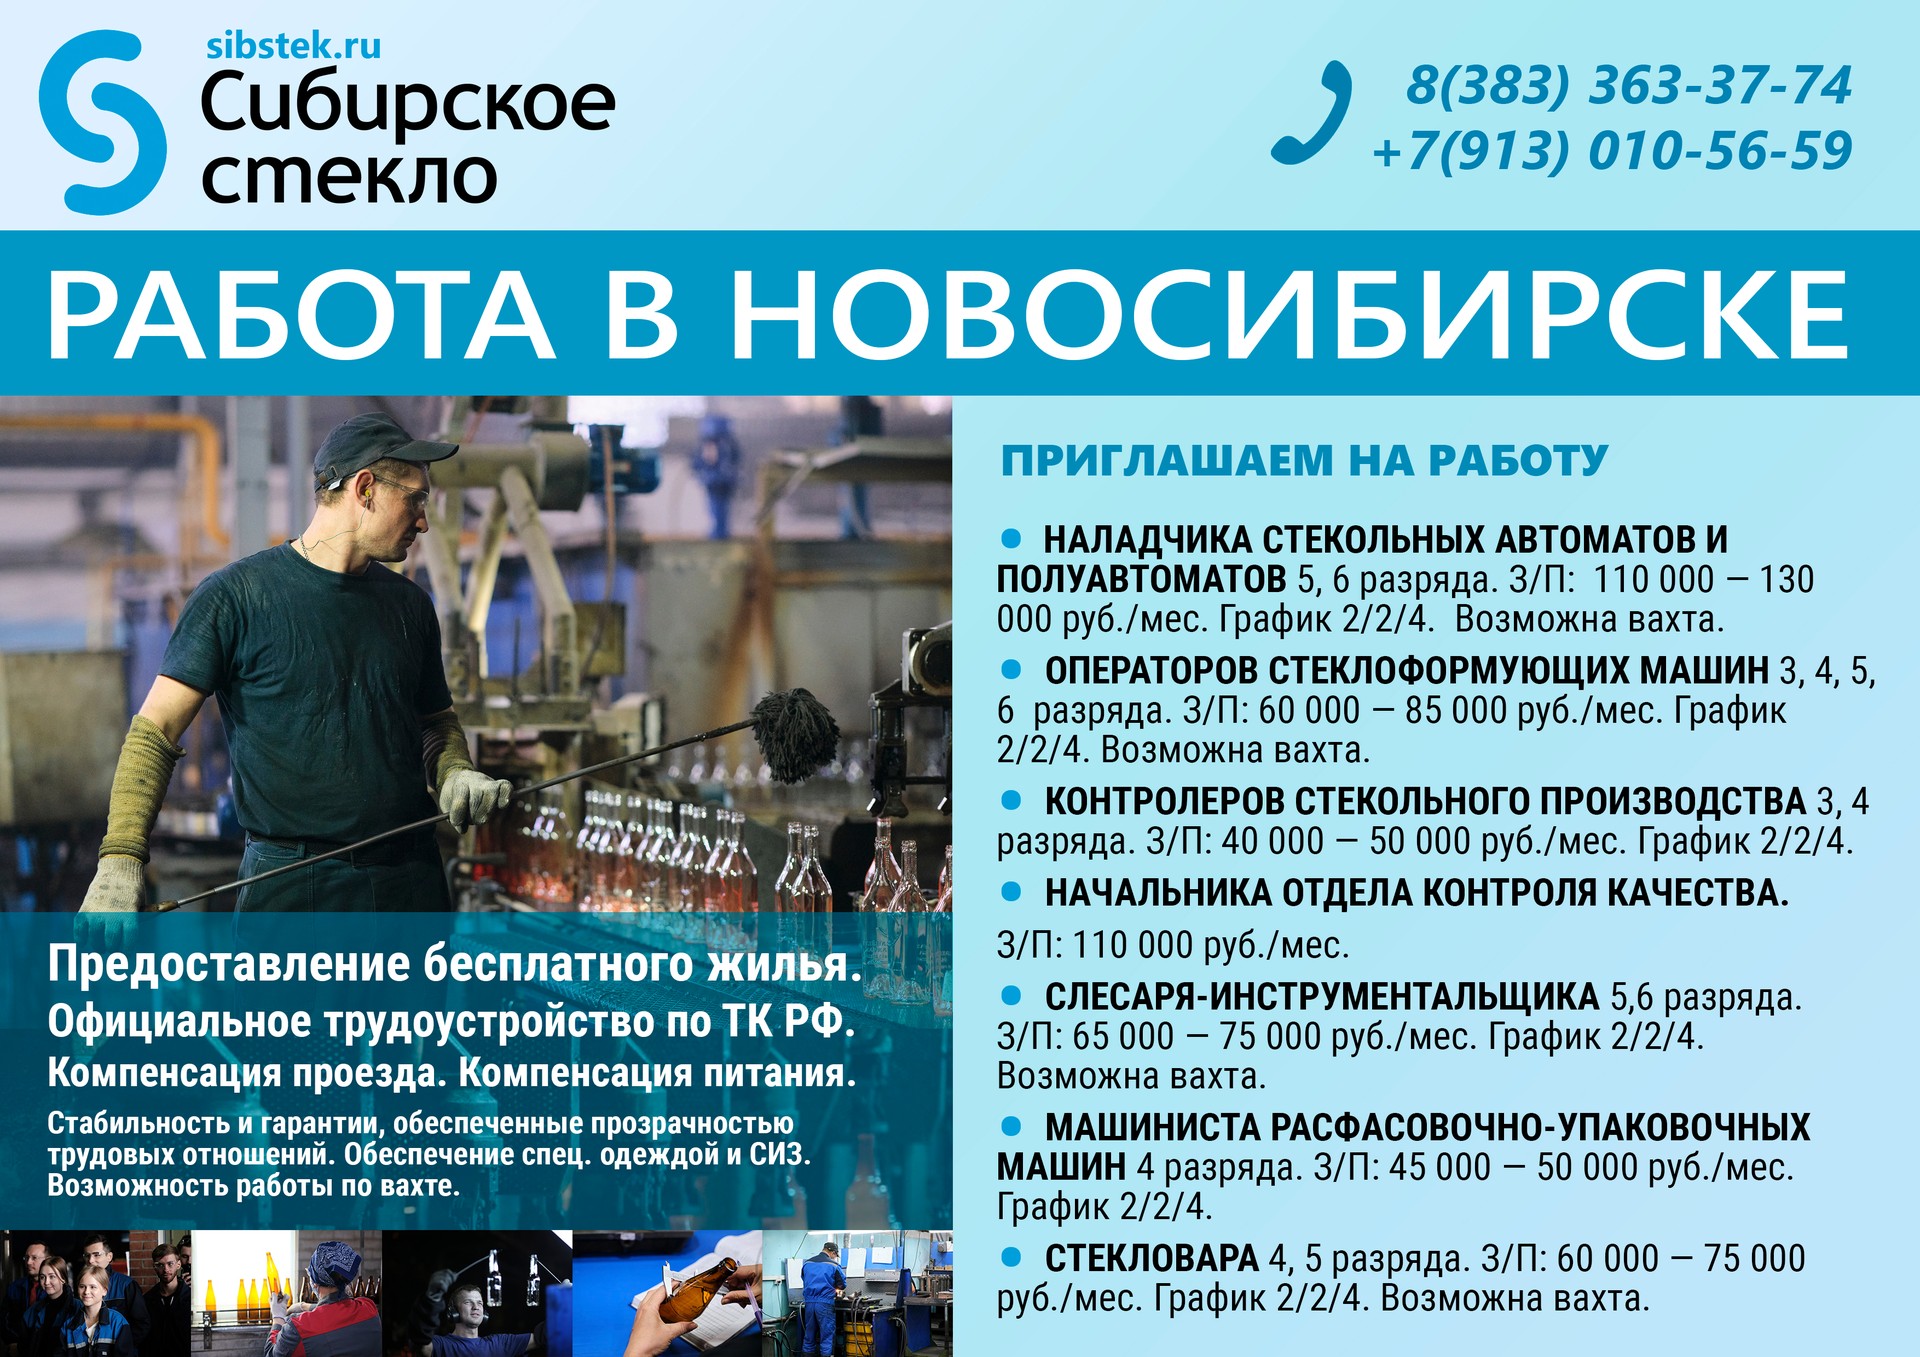 ООО «Сибстекло» приглашает на работу на стекольное производство в город Новосибирск